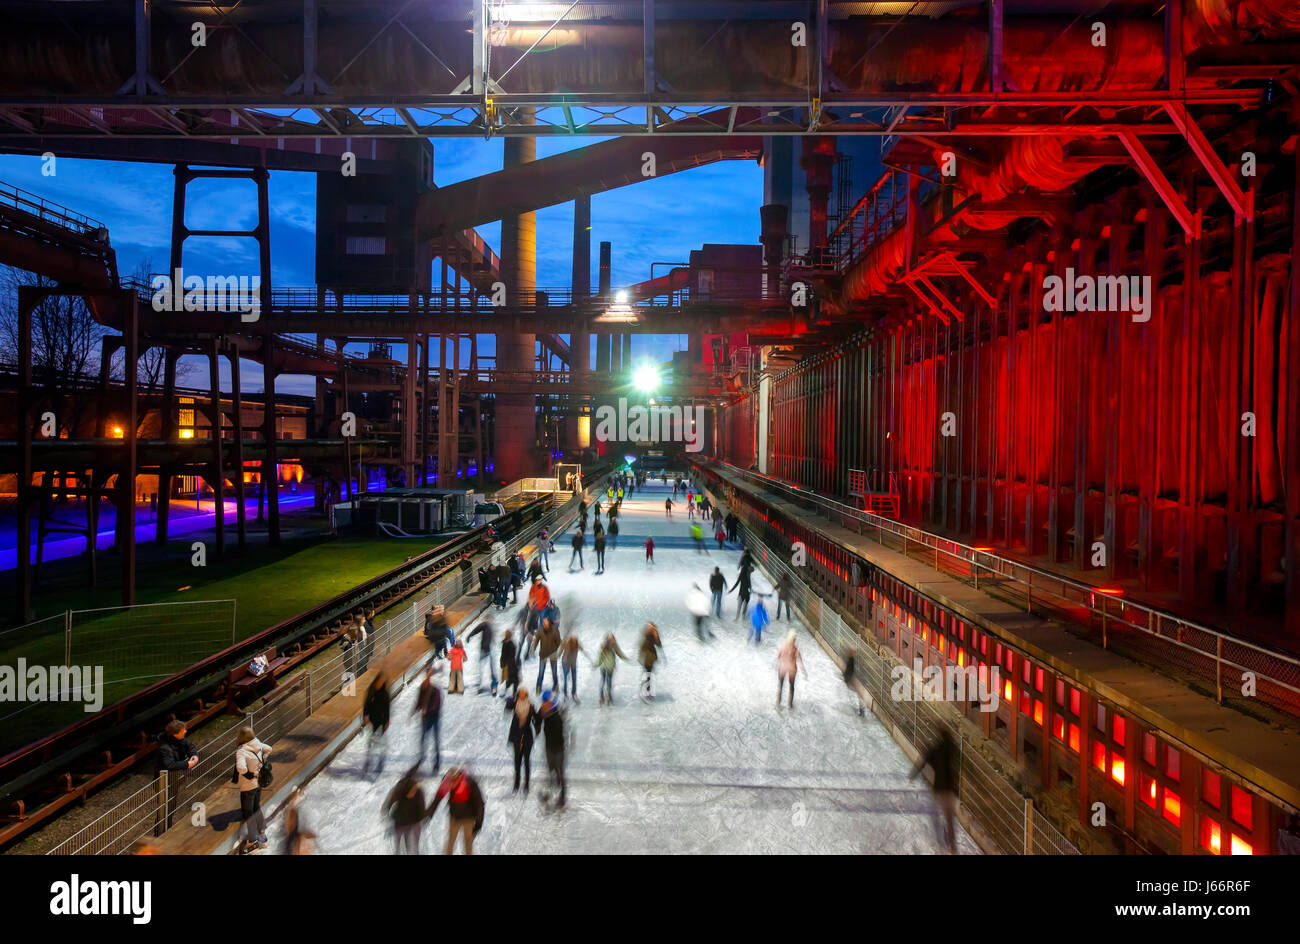 Patinage sur glace, patinoire, cuisson, Zollverein usine complexe industriel de la mine de charbon de Zollverein, l'UNESCO patrimoine mondial culturel Zeche Zollverein, Essen, Banque D'Images